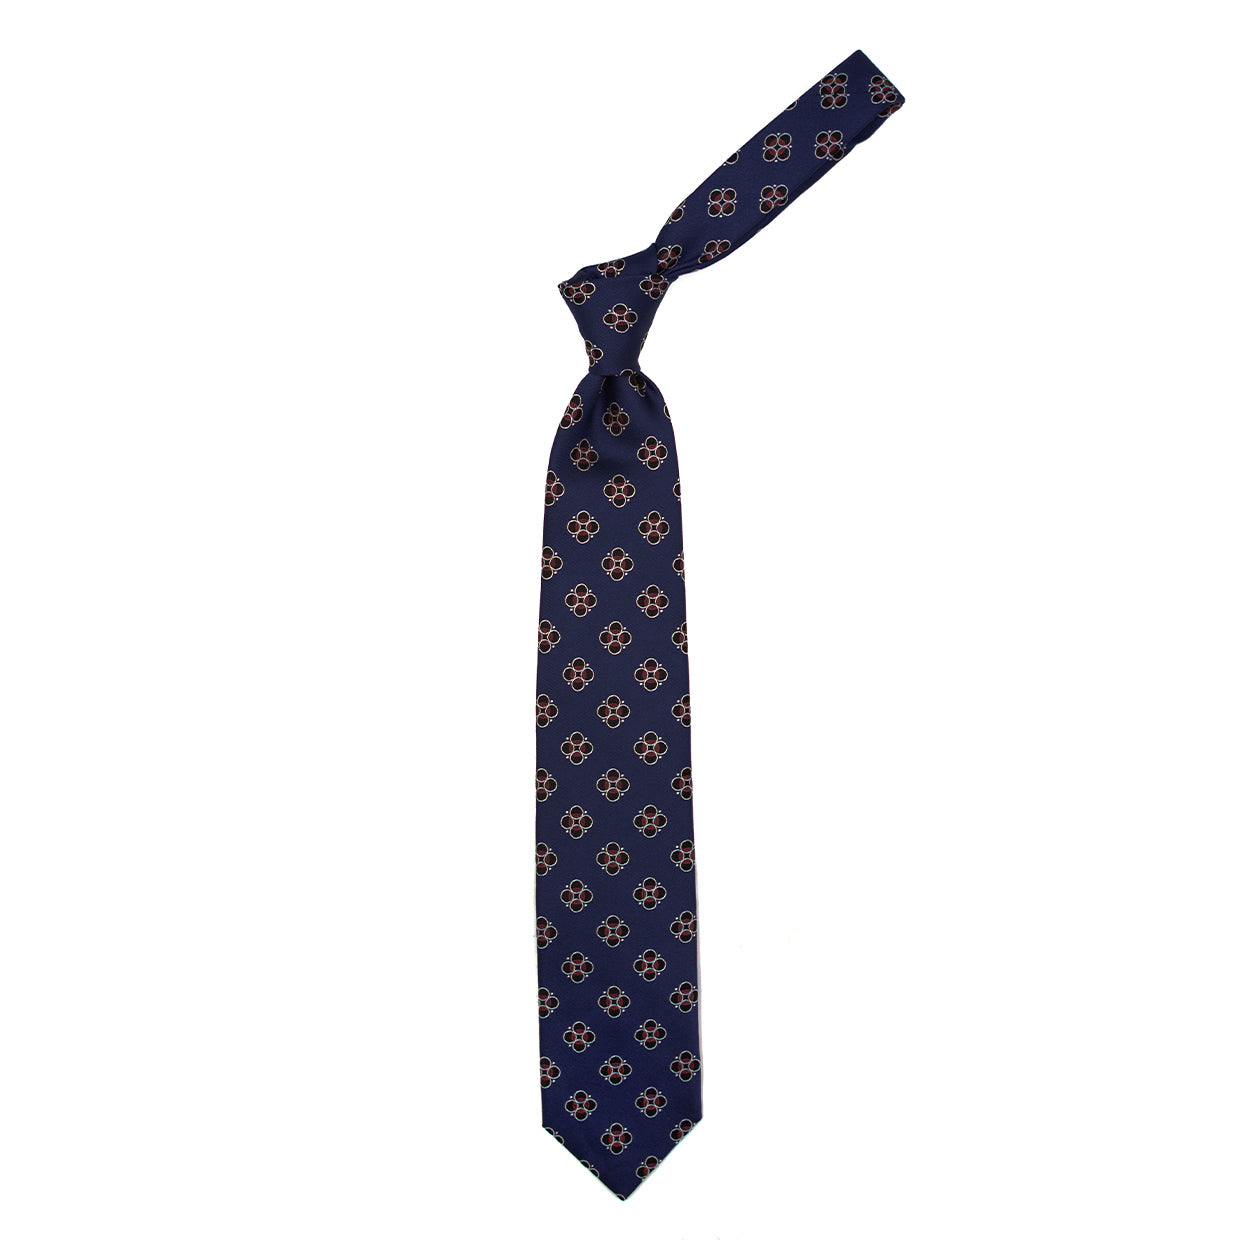 Cravatta blu con pattern nero, bianco e bordeaux